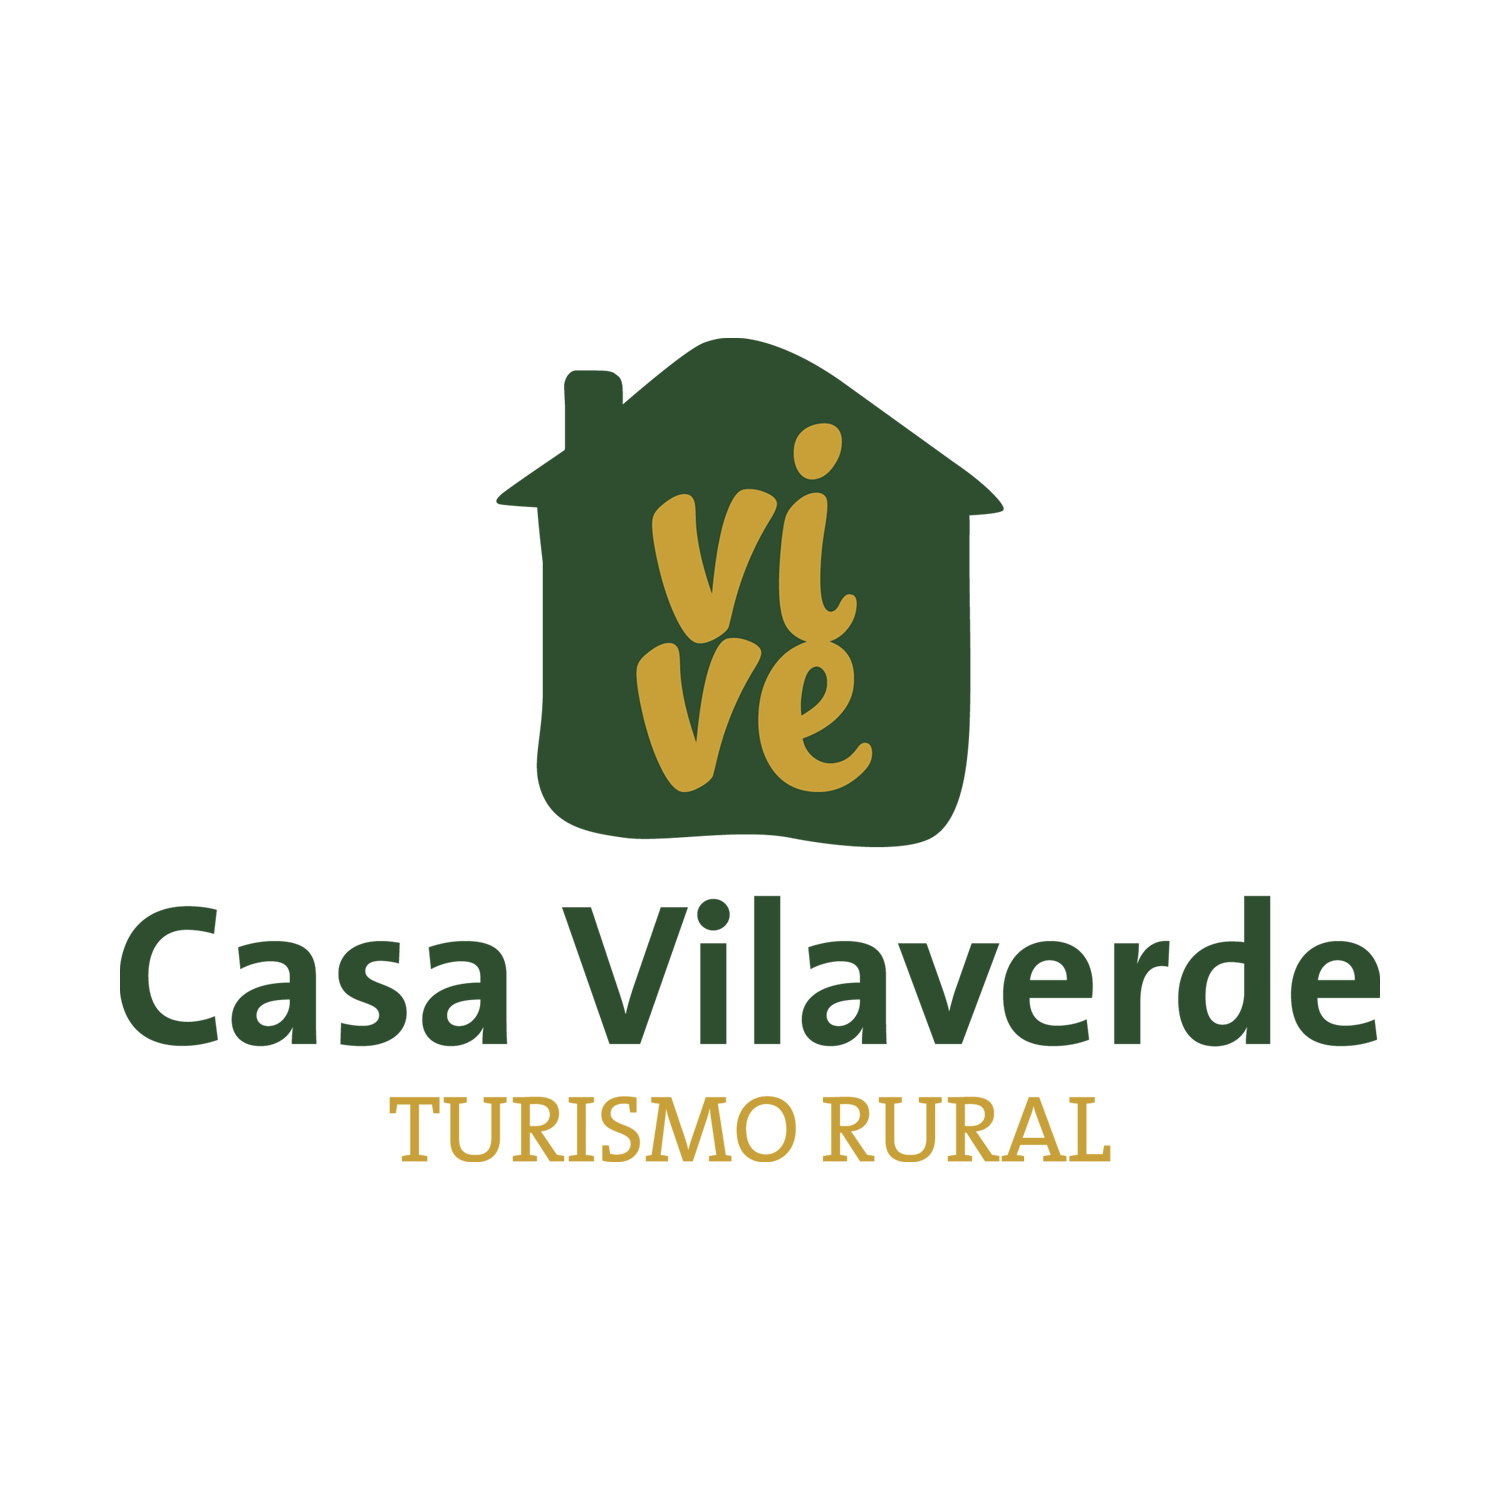 Casa Vilaverde